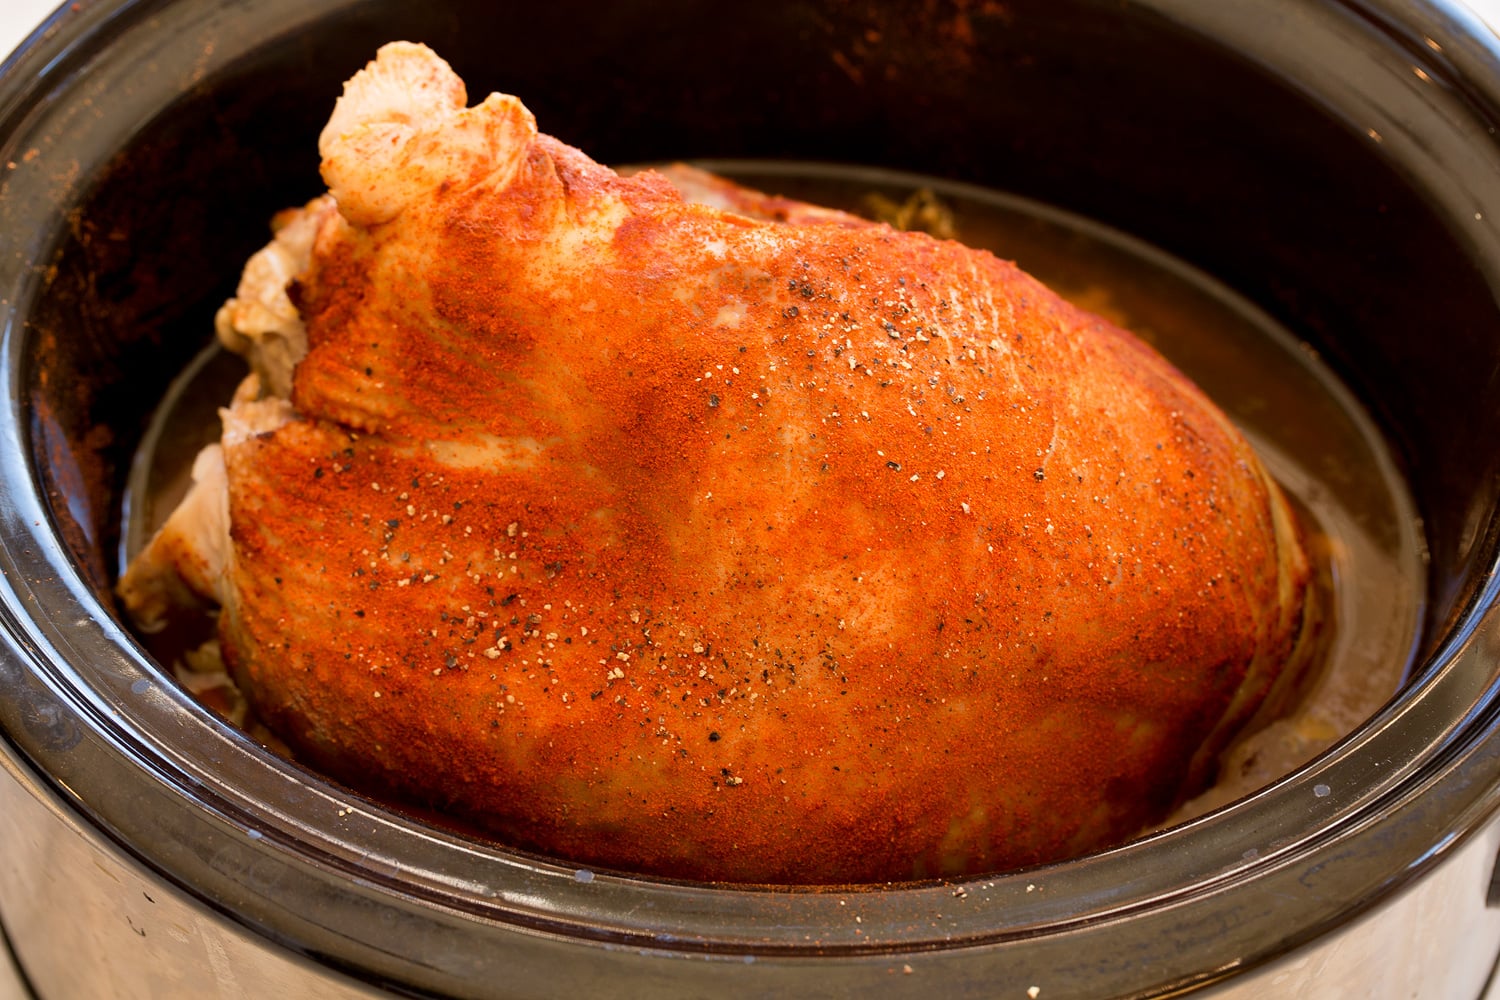 Finished seasoned turkey breast in crockpot.